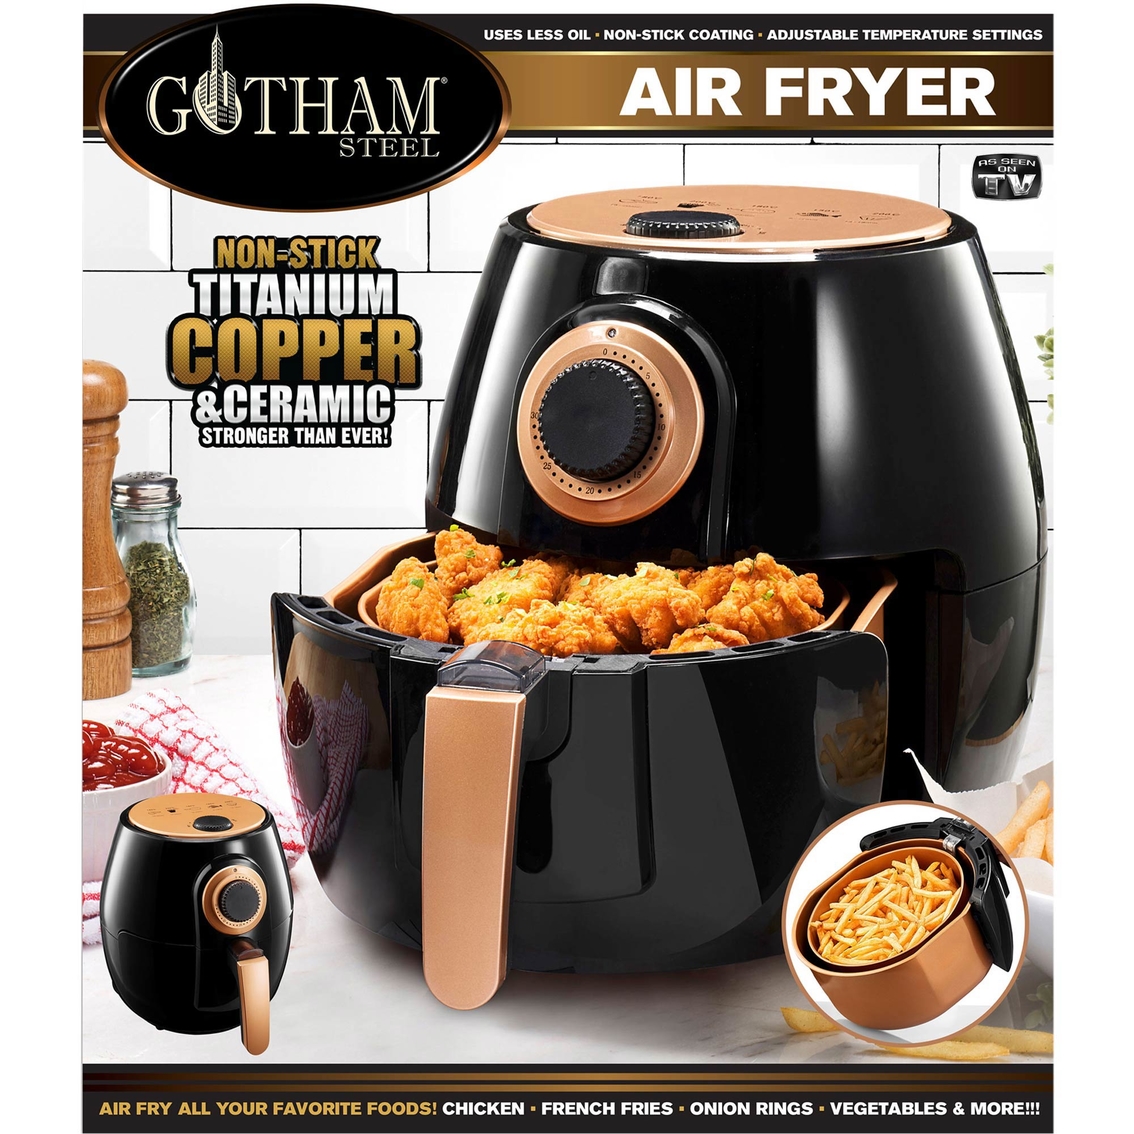 Gotham Steel Electric Air Fryer, Fryers